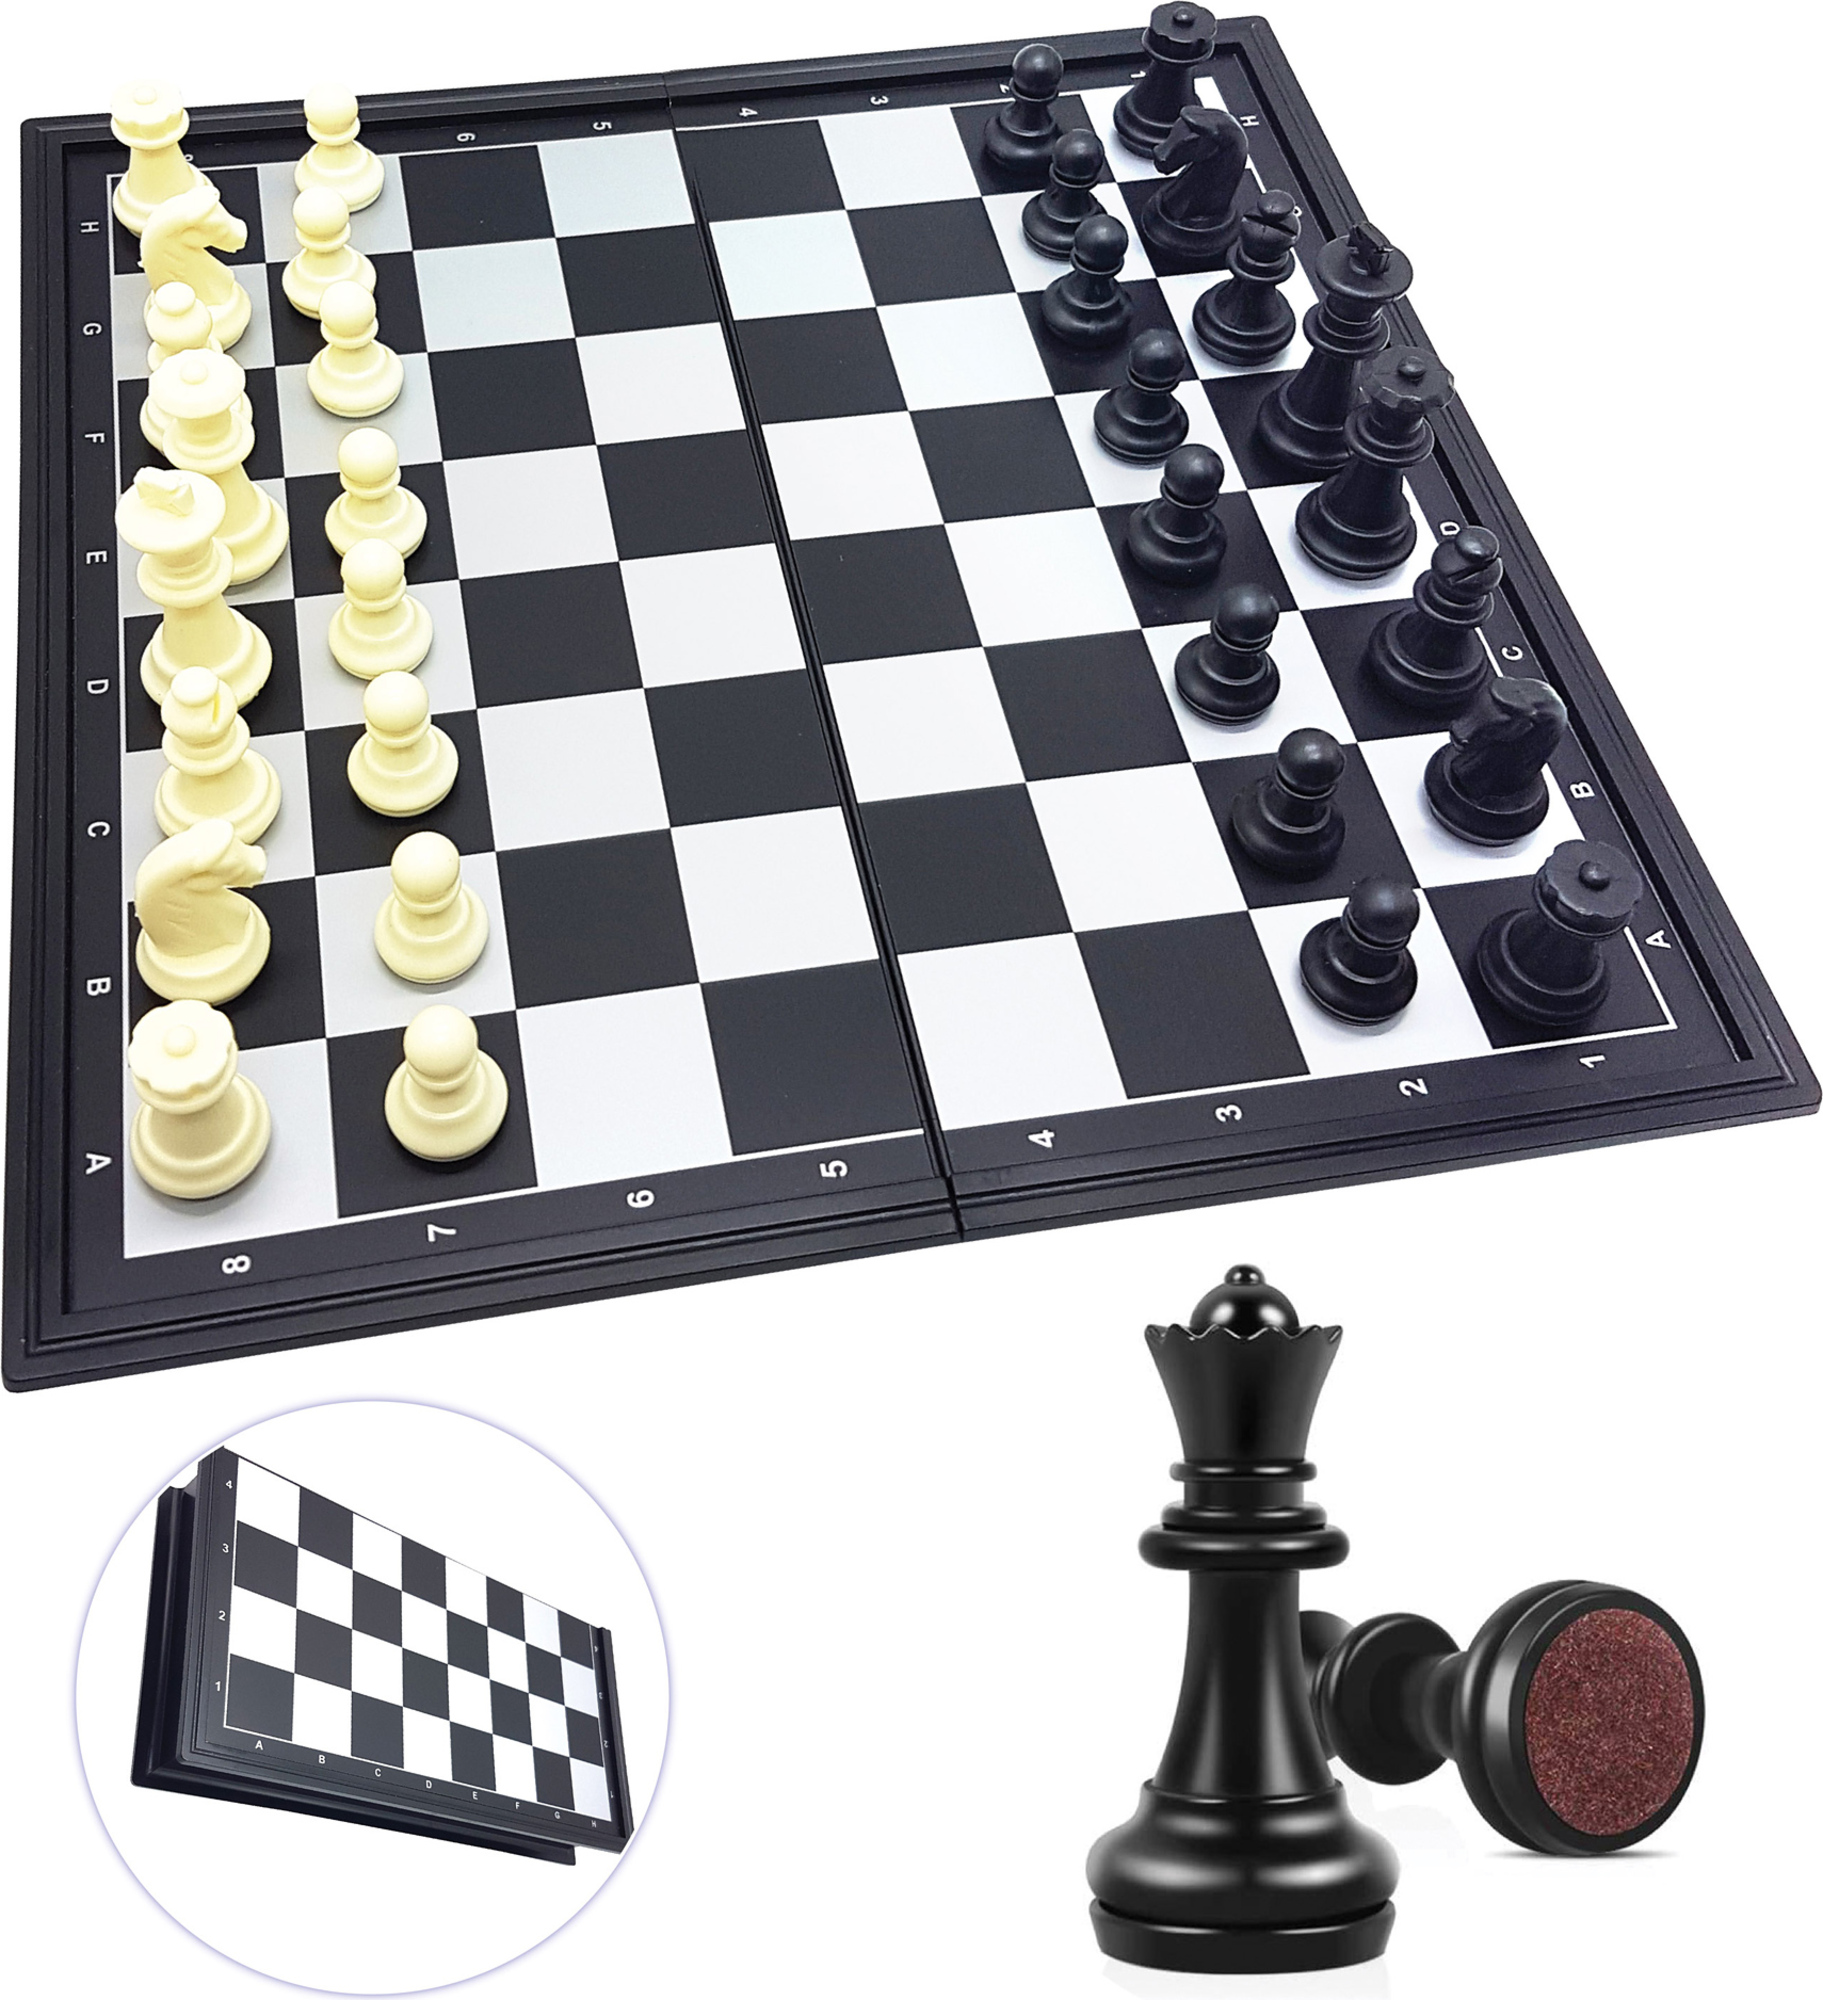 Magnetické skládací šachy Chessman Classic